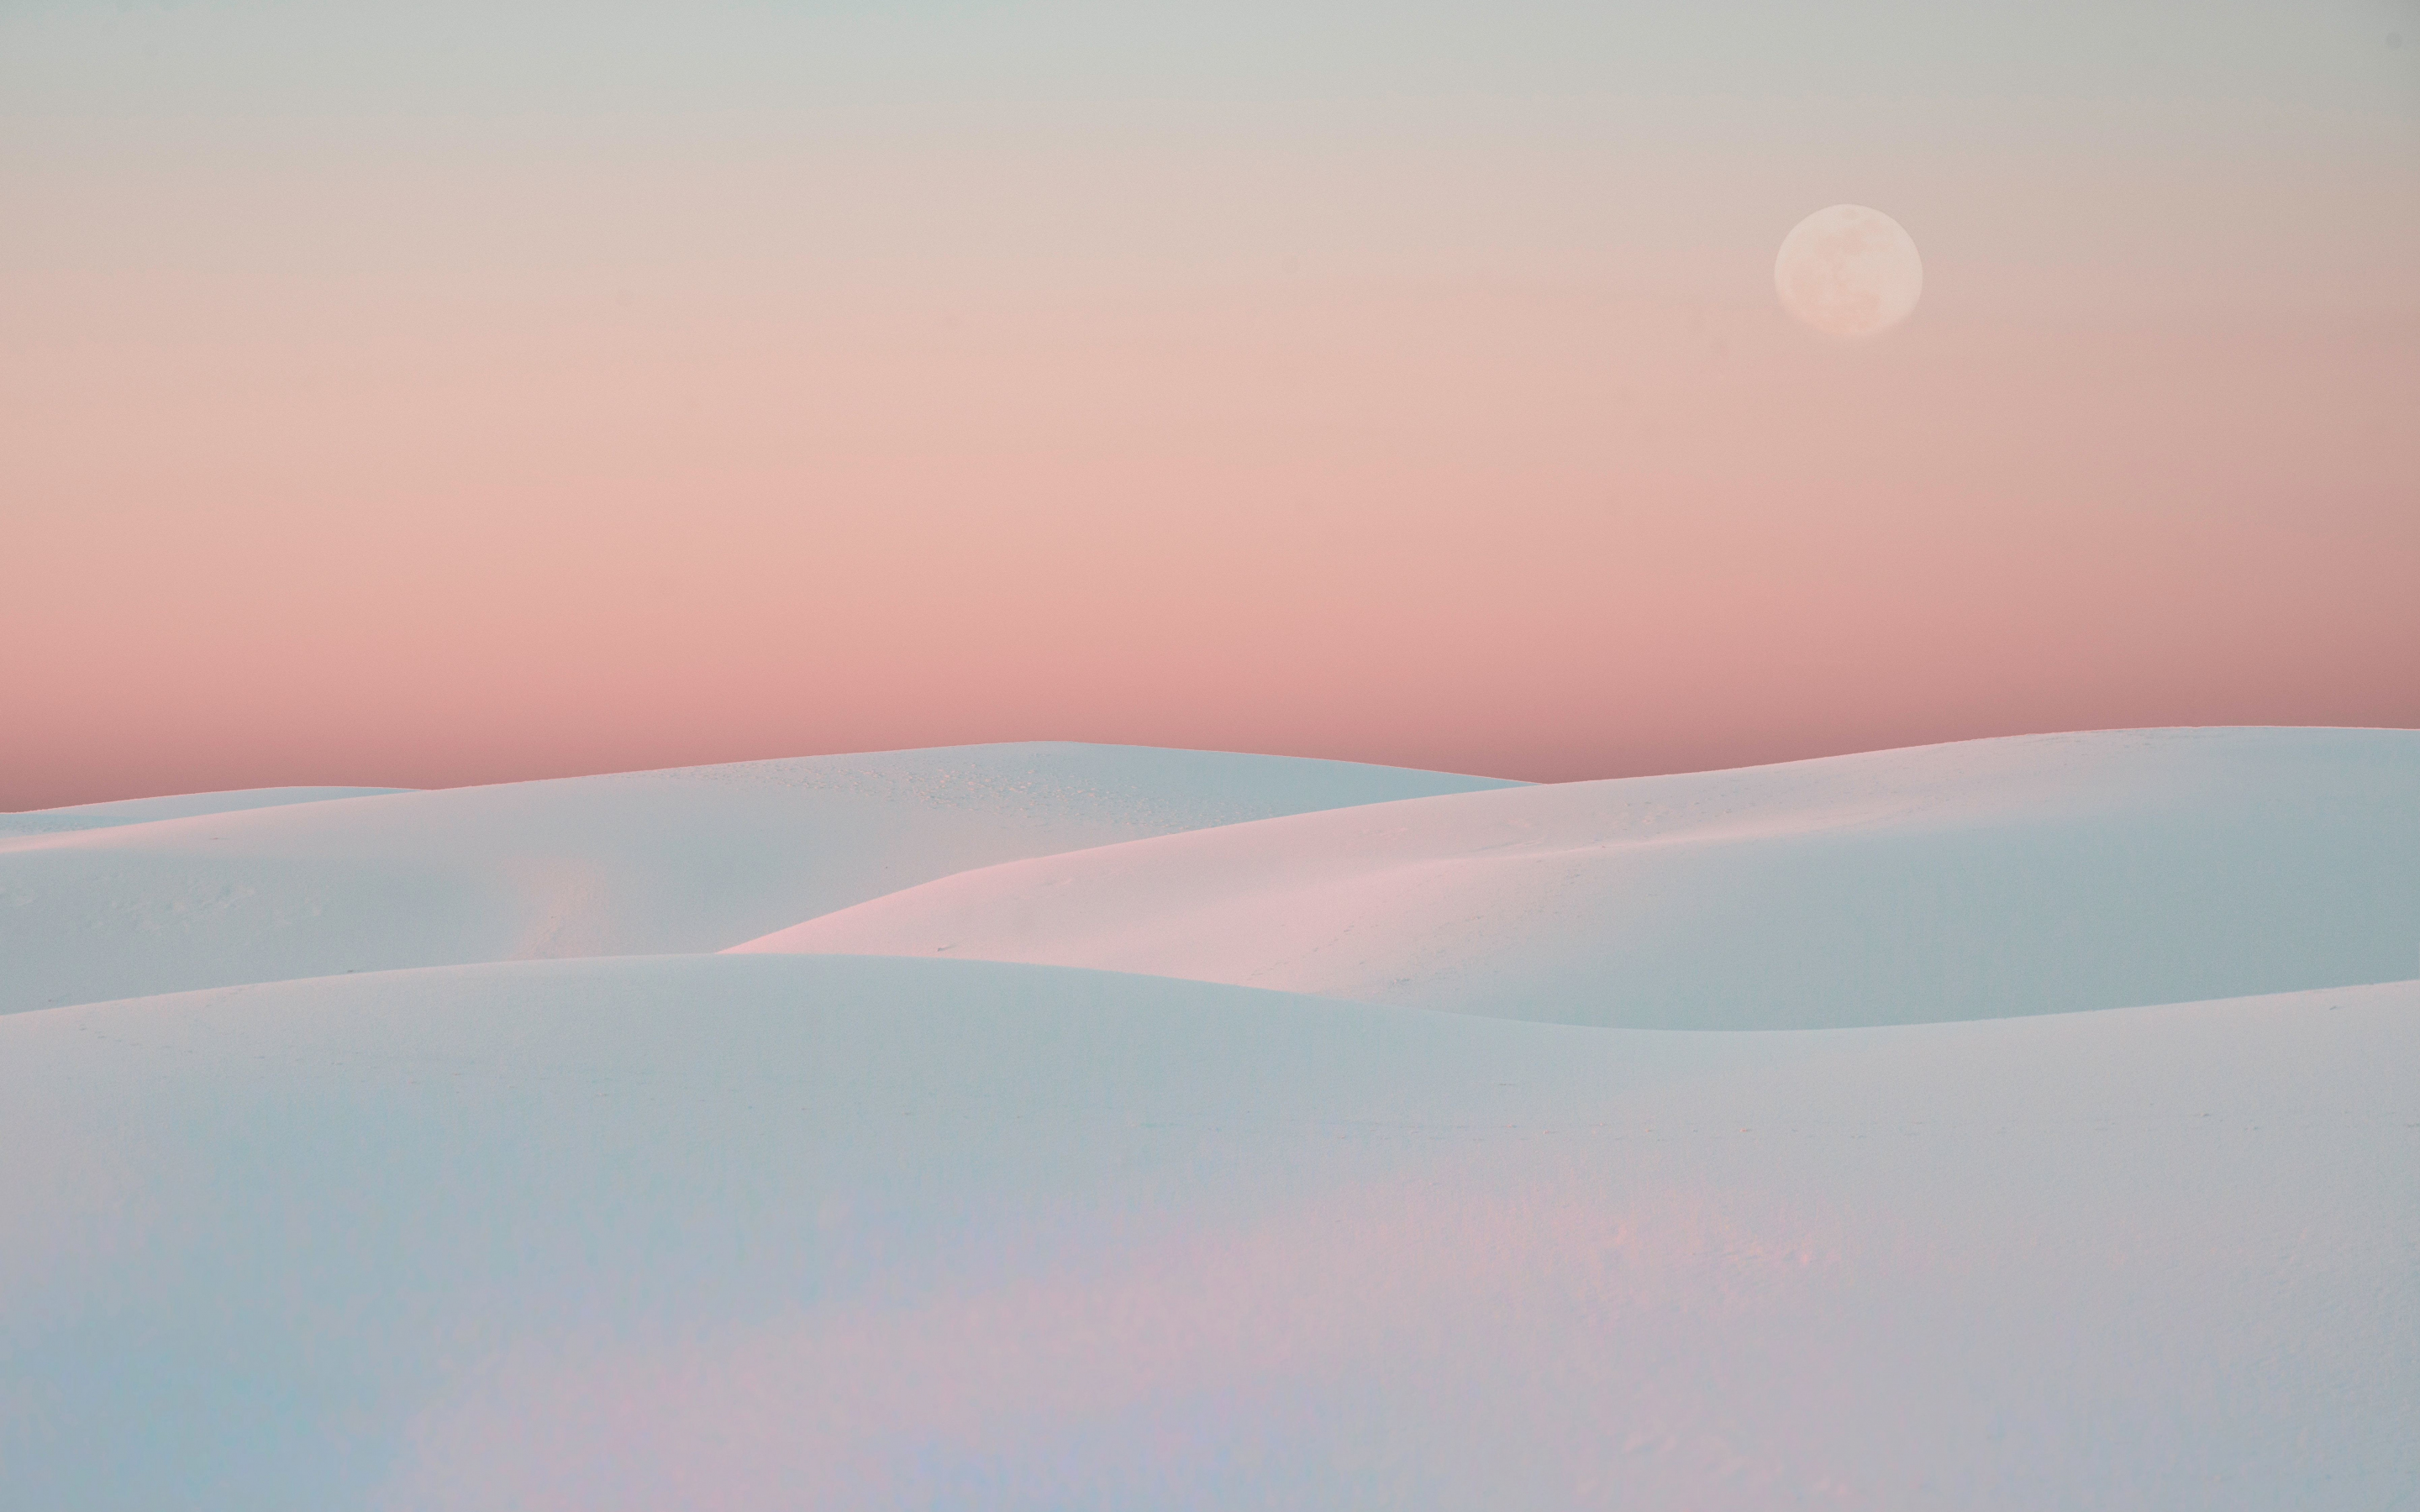 Sunset, white desert, dunes, nature, 2880x1800 wallpaper